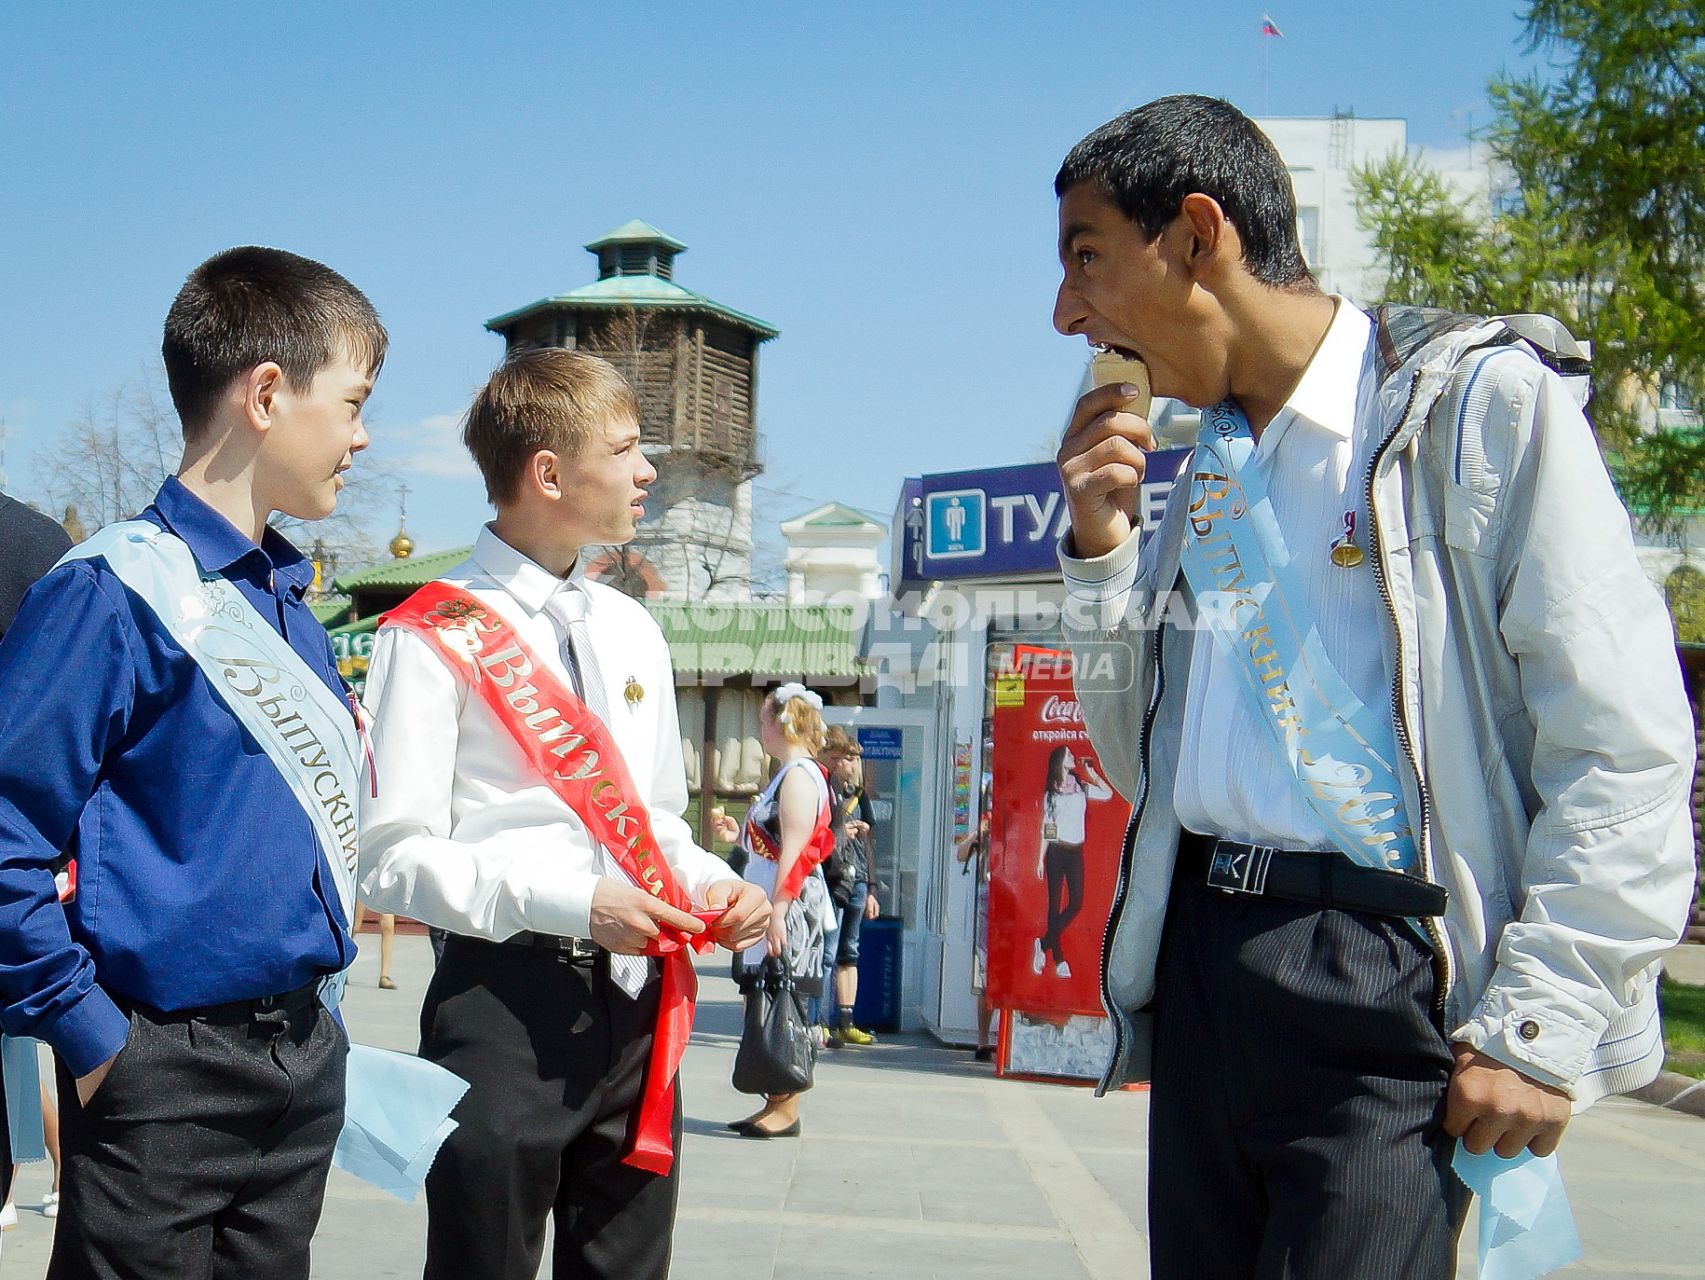 Последний звонок в Екатеринбурге. На снимке: юноша ест мороженое.